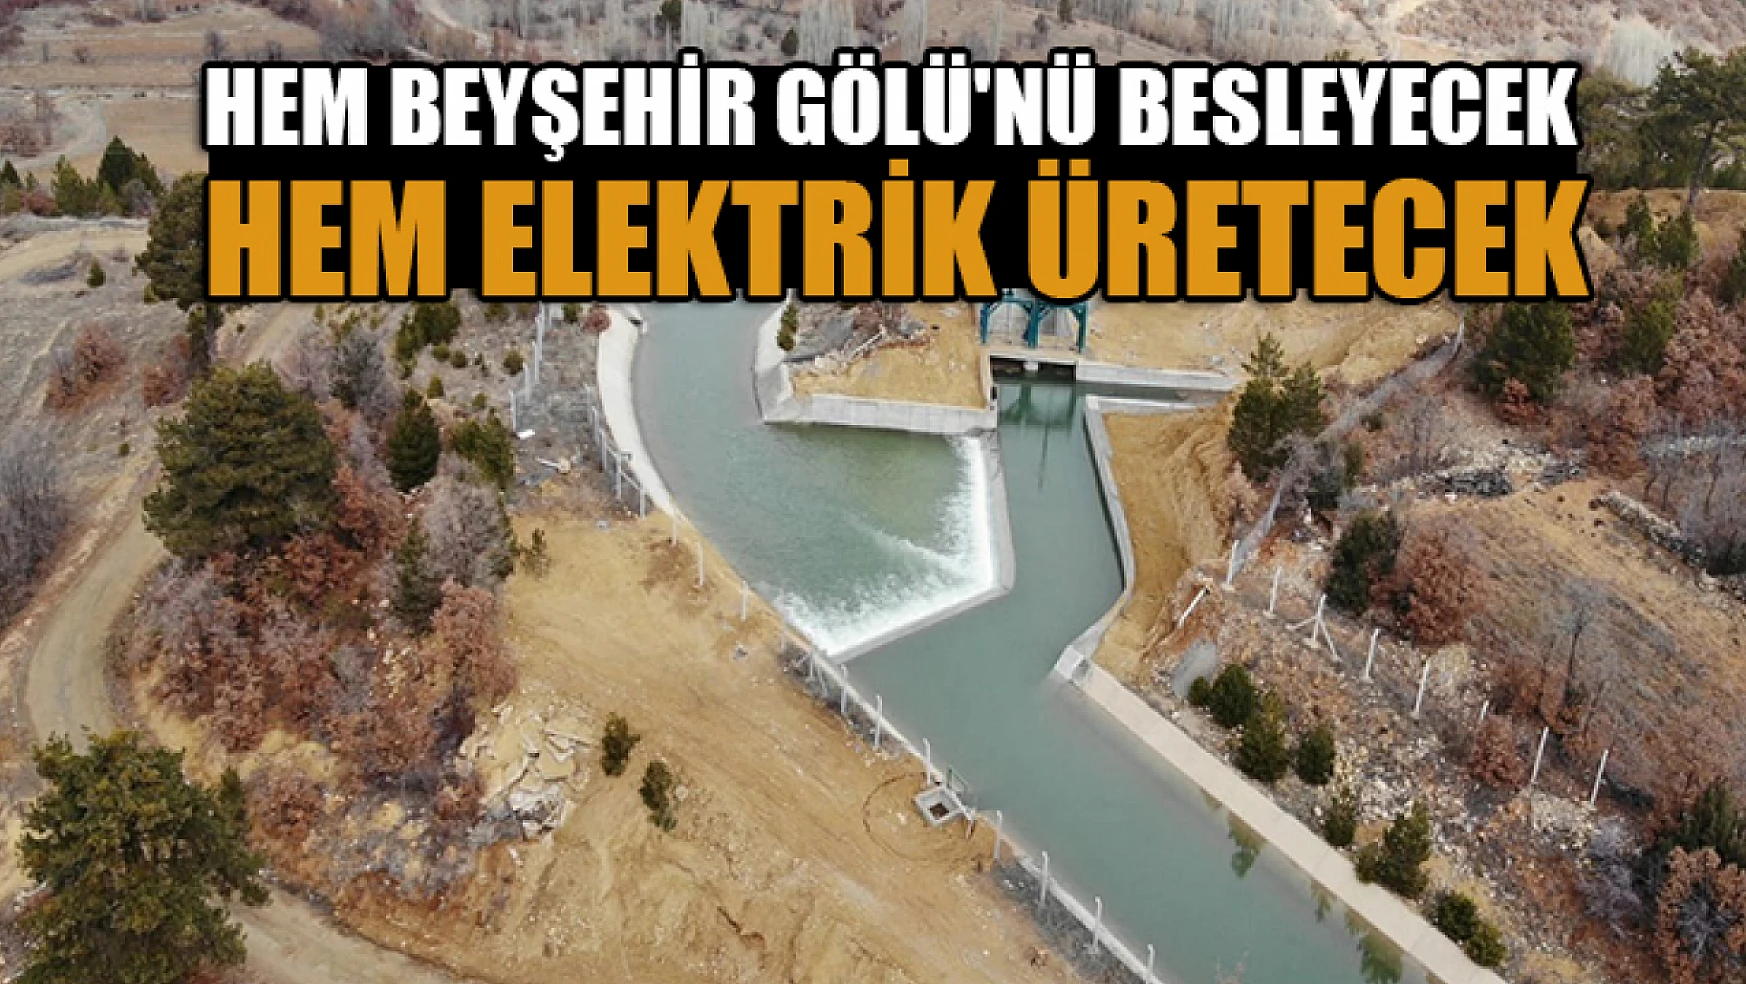 Gembos hem gölü besleyecek hem elektrik üretecek